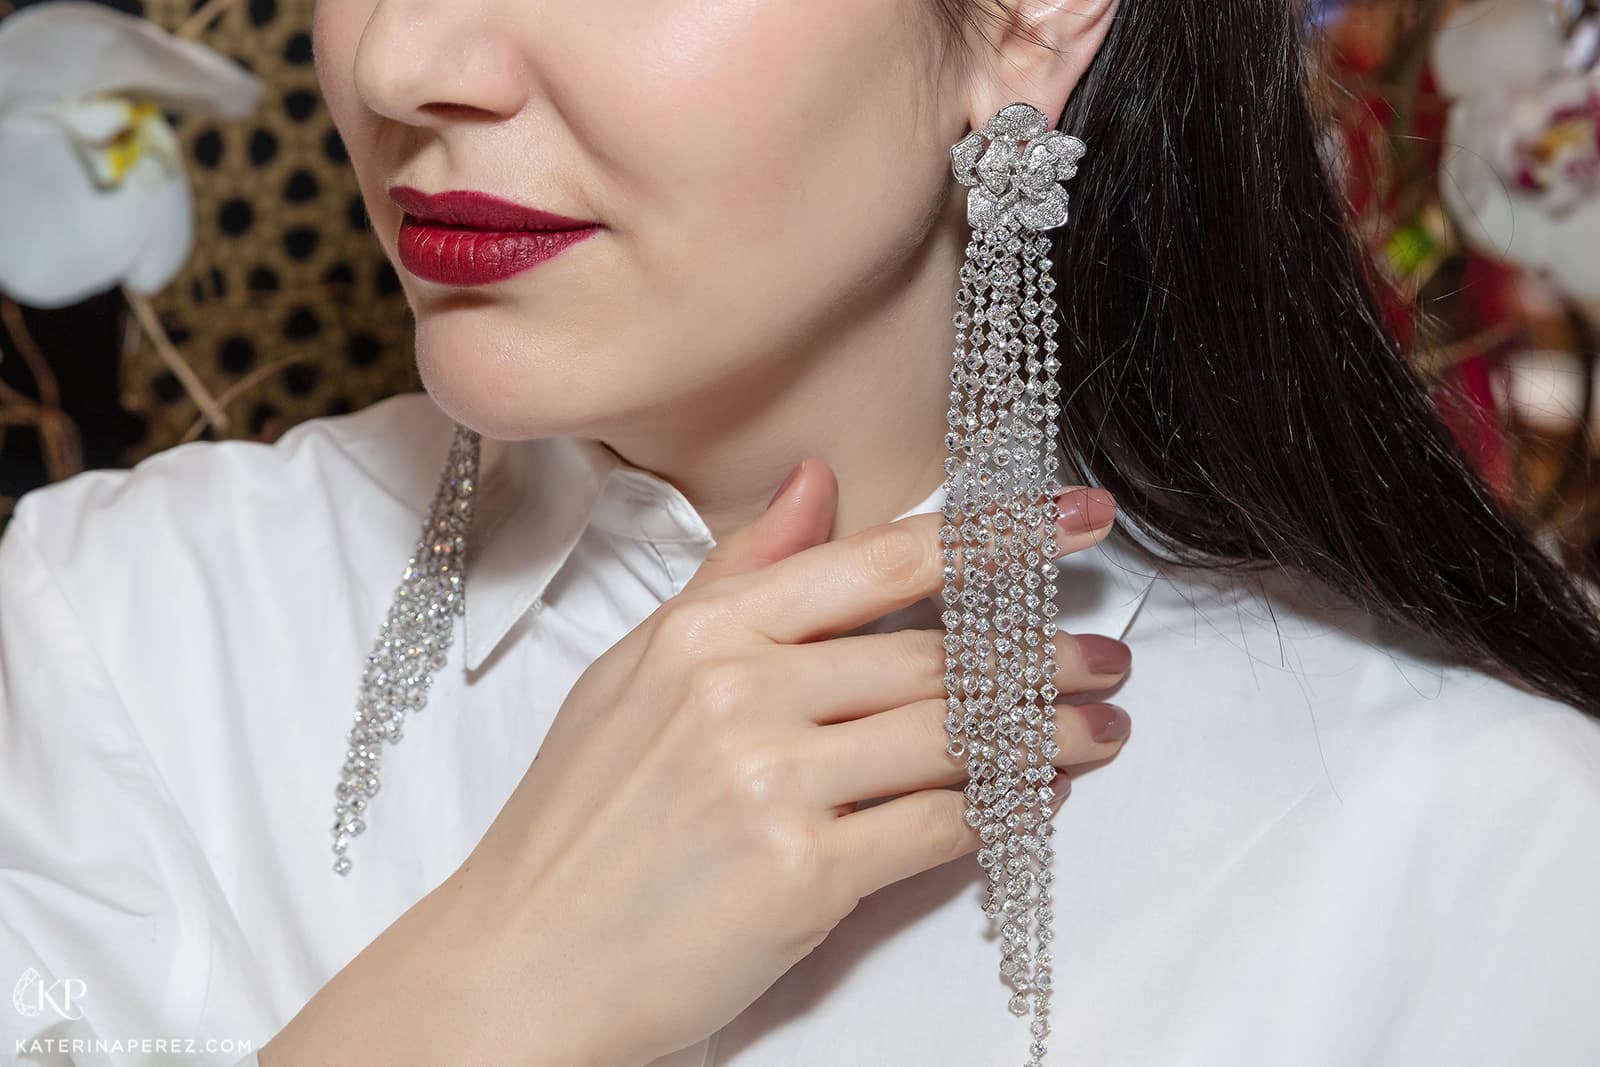 Dazzling Diamonds flower earrings by Jaipur Gems. Photo by Simon Martner